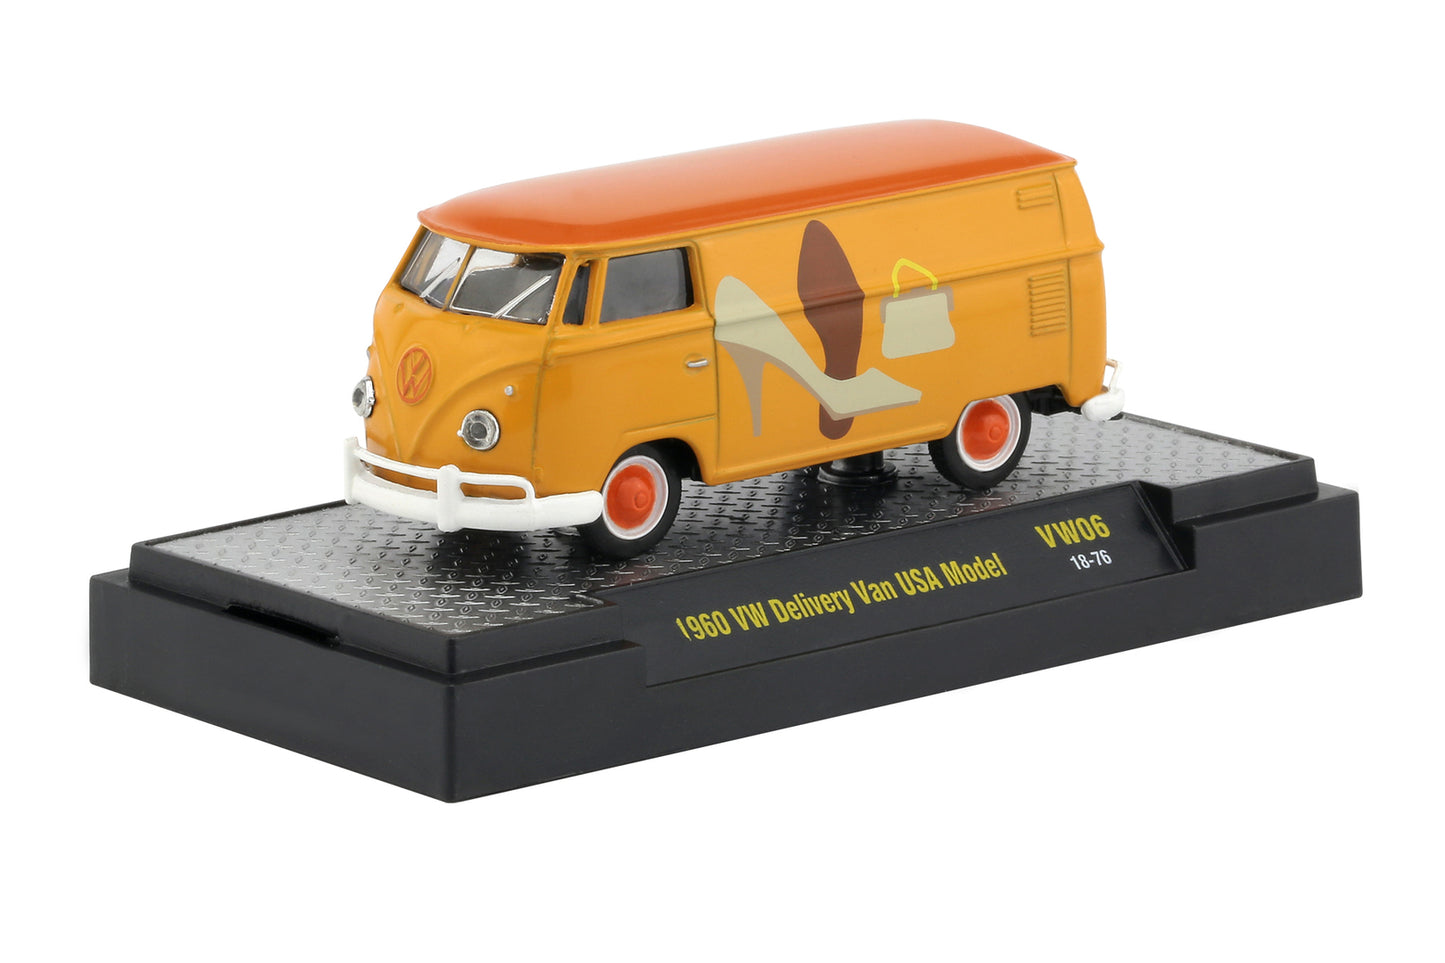 Release VW06 - 1960 VW Delivery Van USA Model (light orange) Die Cast Model